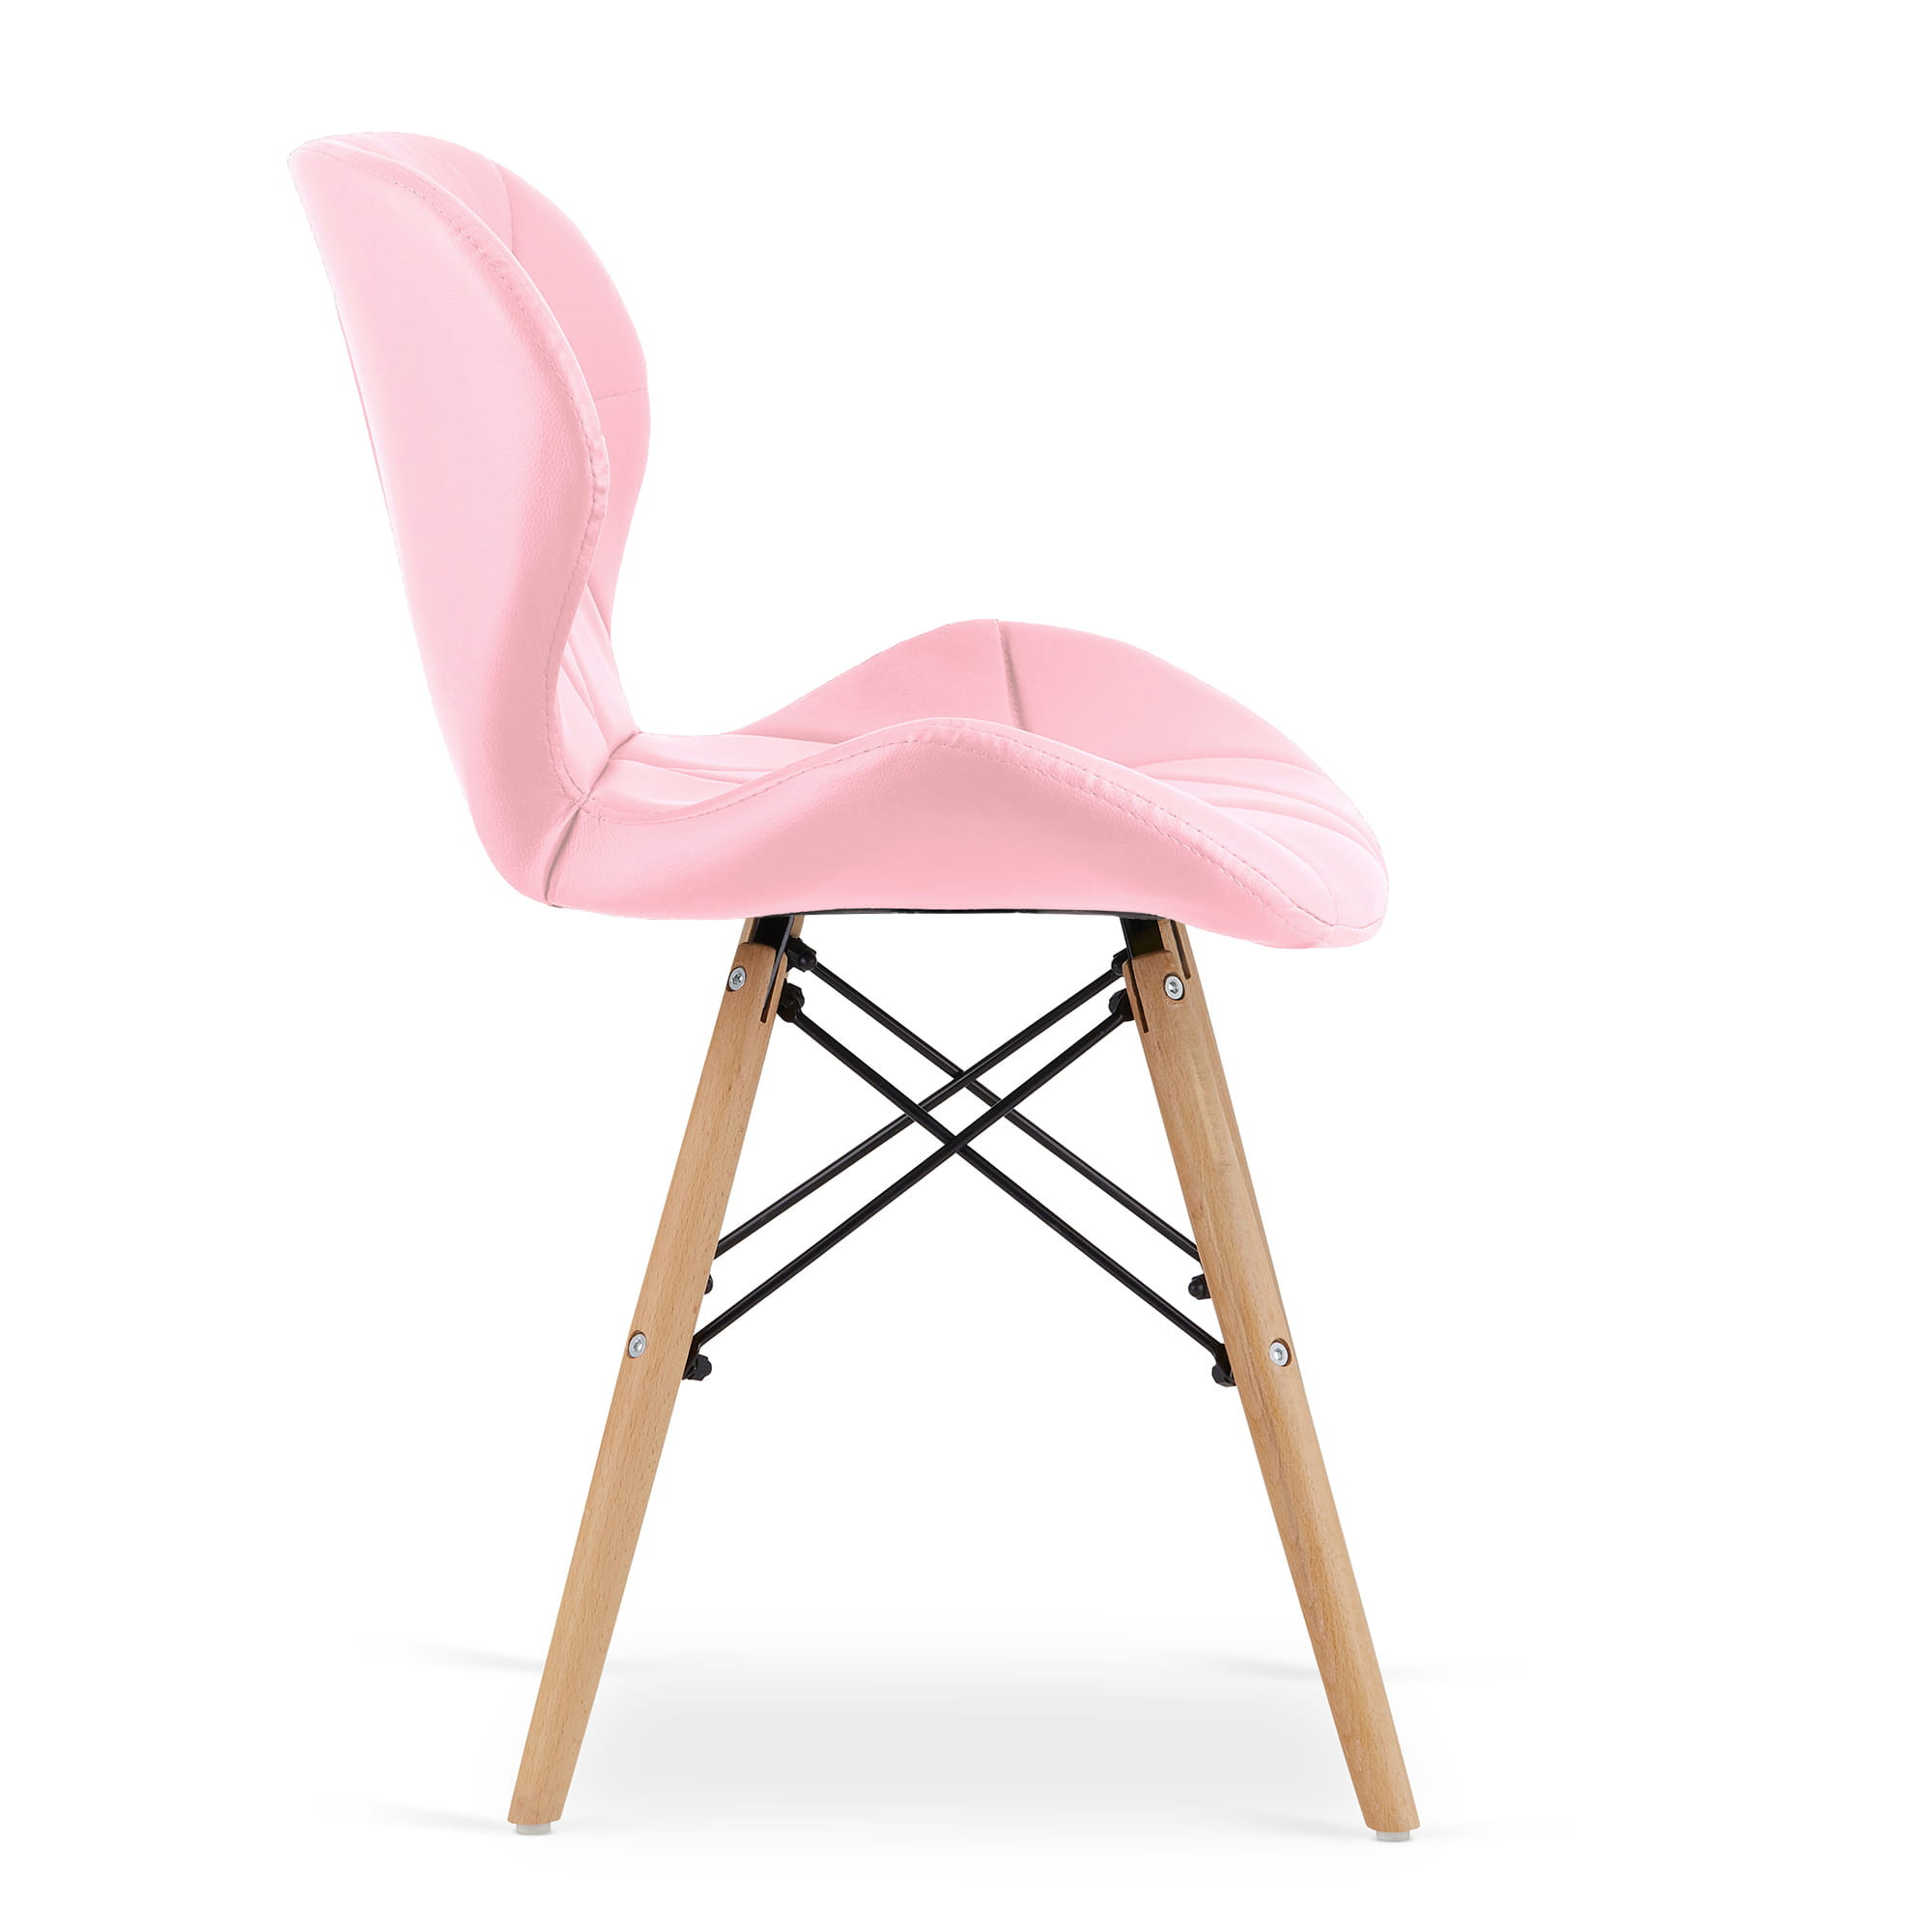 Set dvou jídelních židlí LAGO ekokůže - růžová (hnědé nohy) 2ks